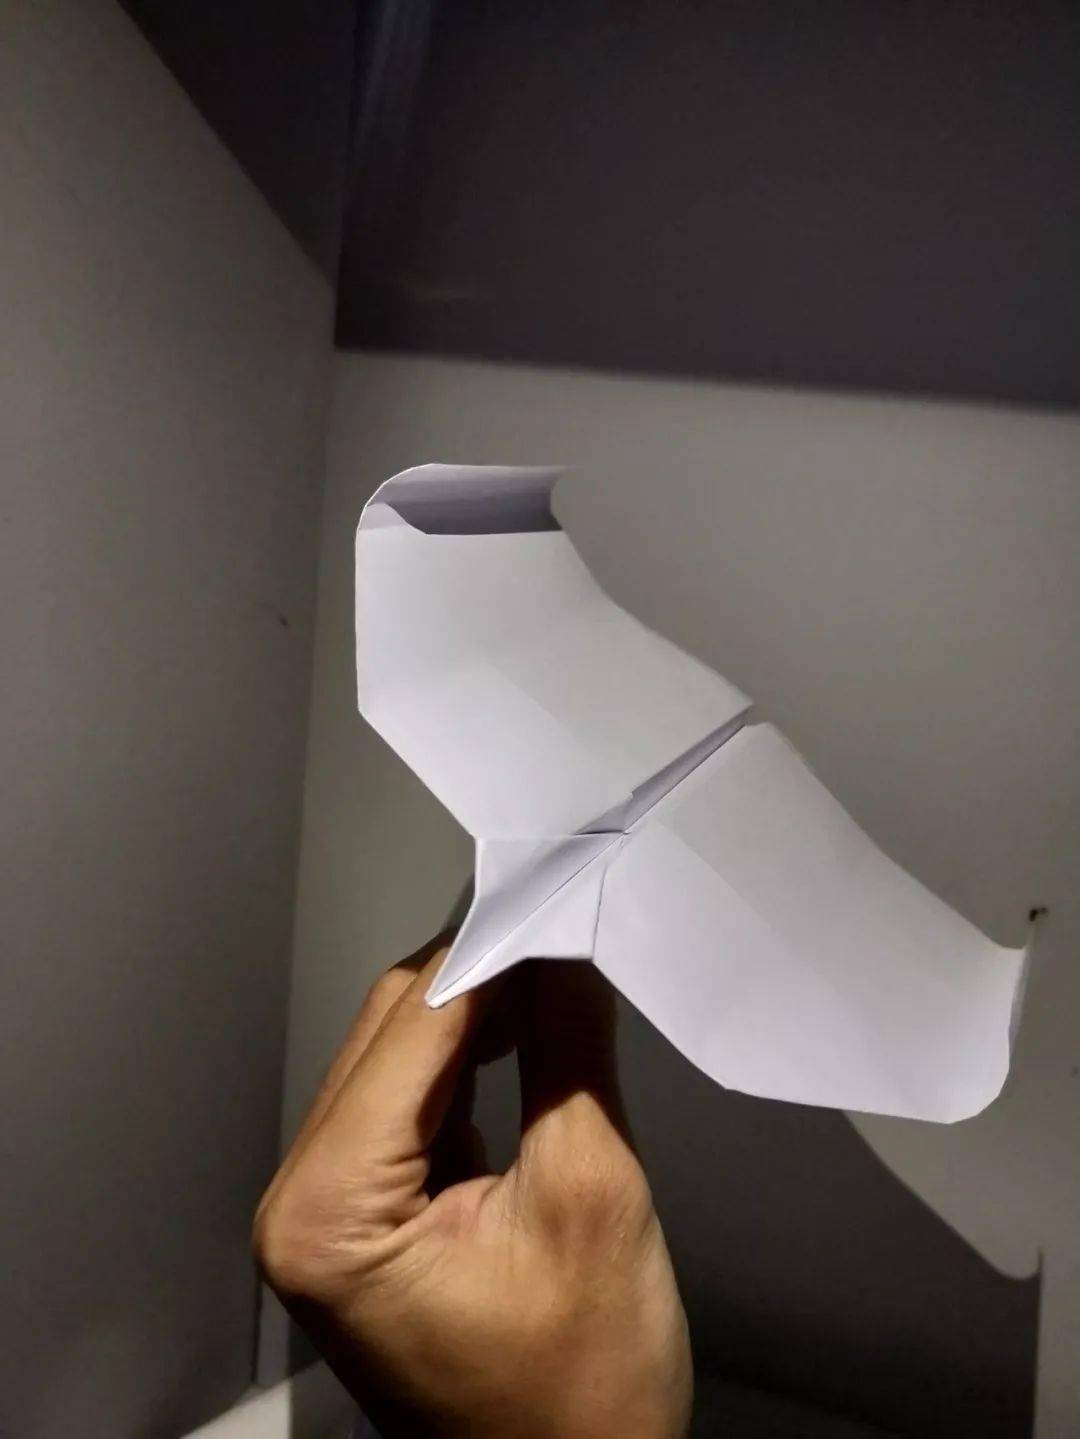 [中国能用纸飞机吗]中国能用纸飞机吗现在